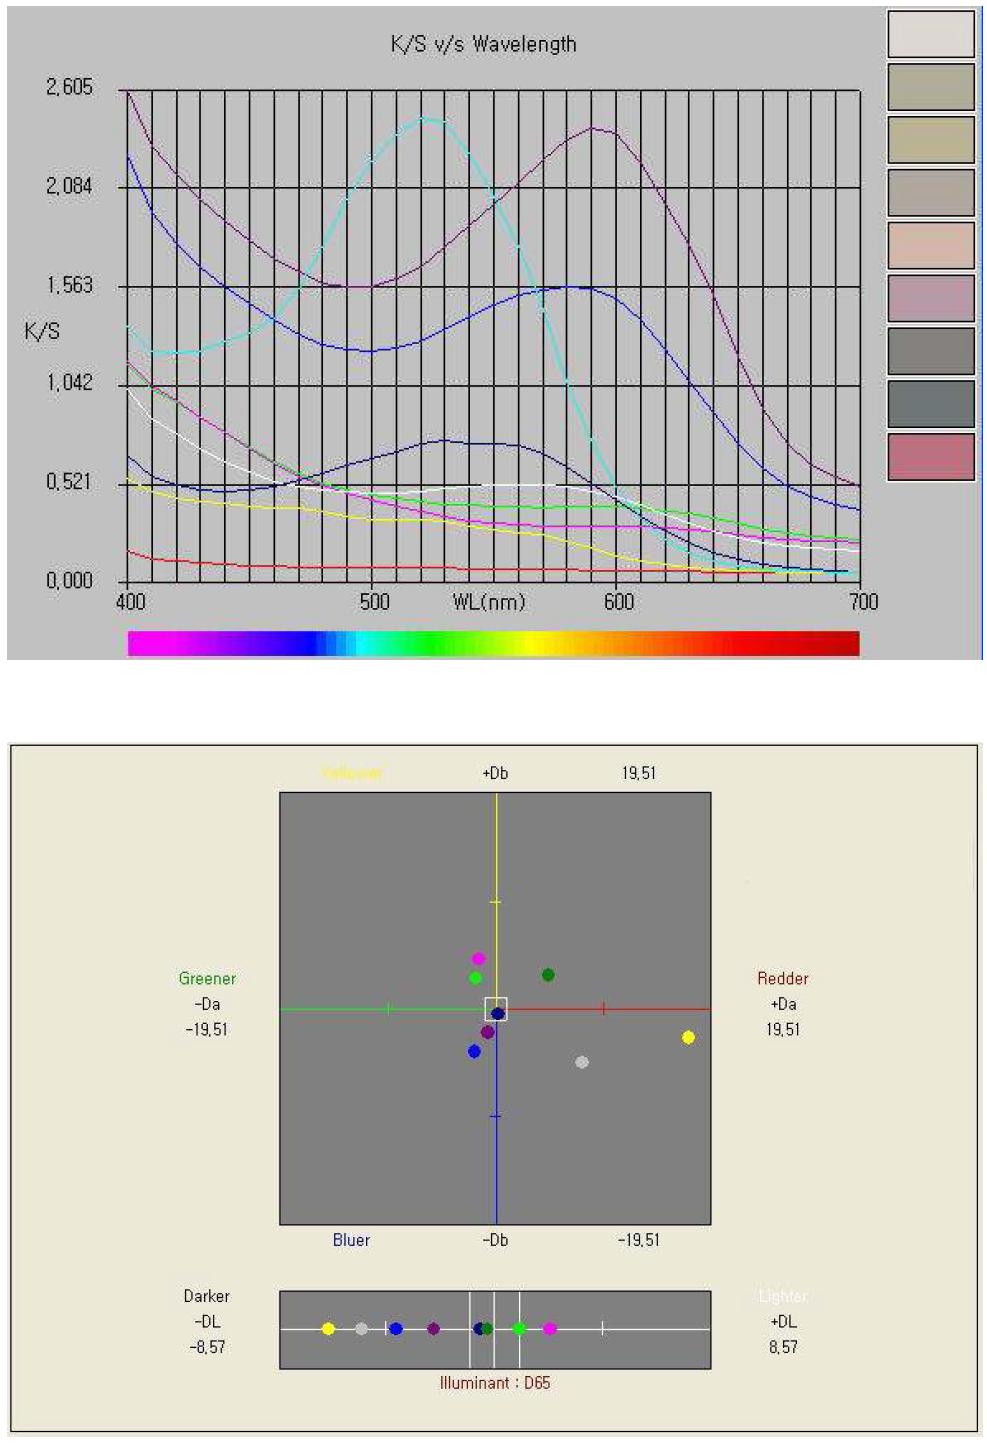 샘플 71-144 K/S Wavelength 및 색상환